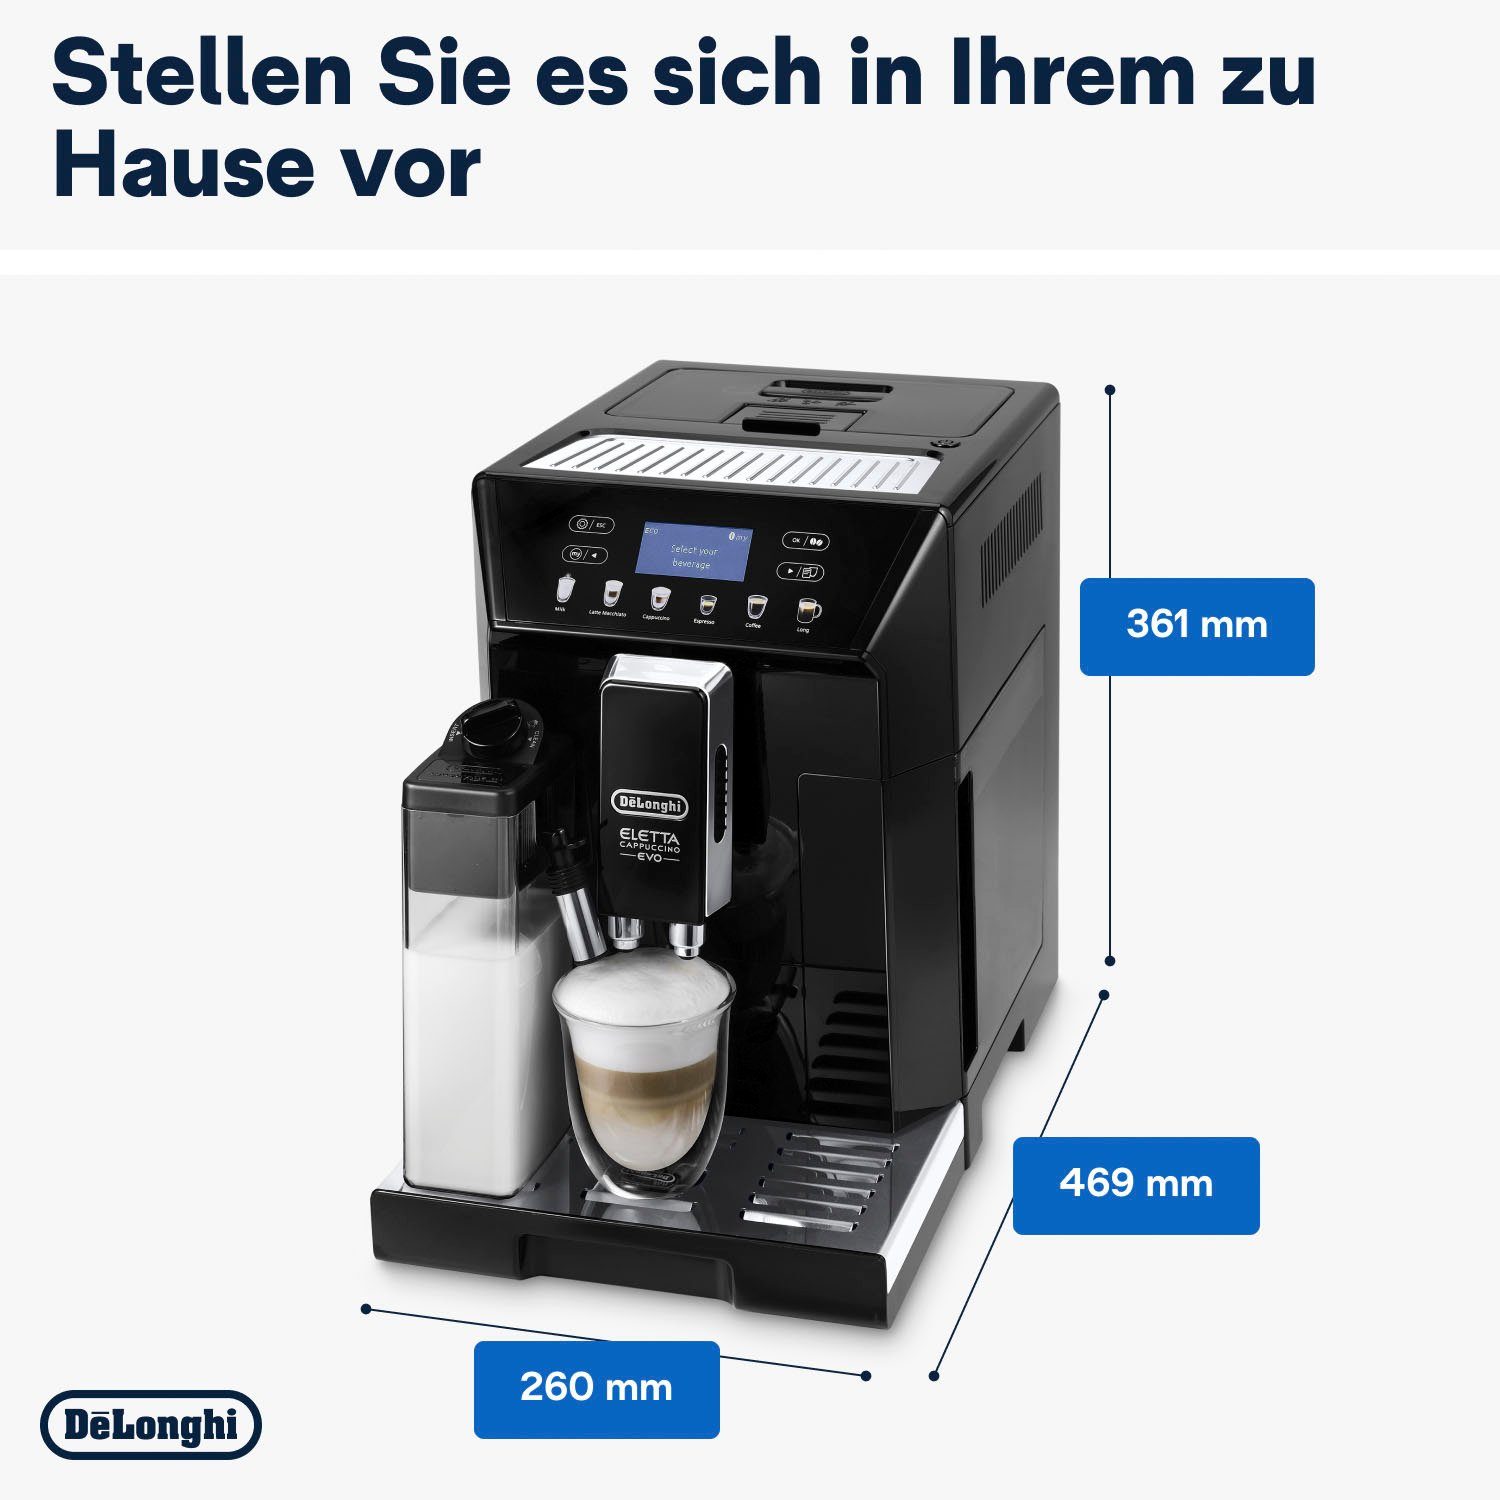 De'Longhi Kaffeevollautomat ECAM Eletta Pflegeset Evo, im schwarz, Wert 31,99 inkl. € UVP von 46.860.B